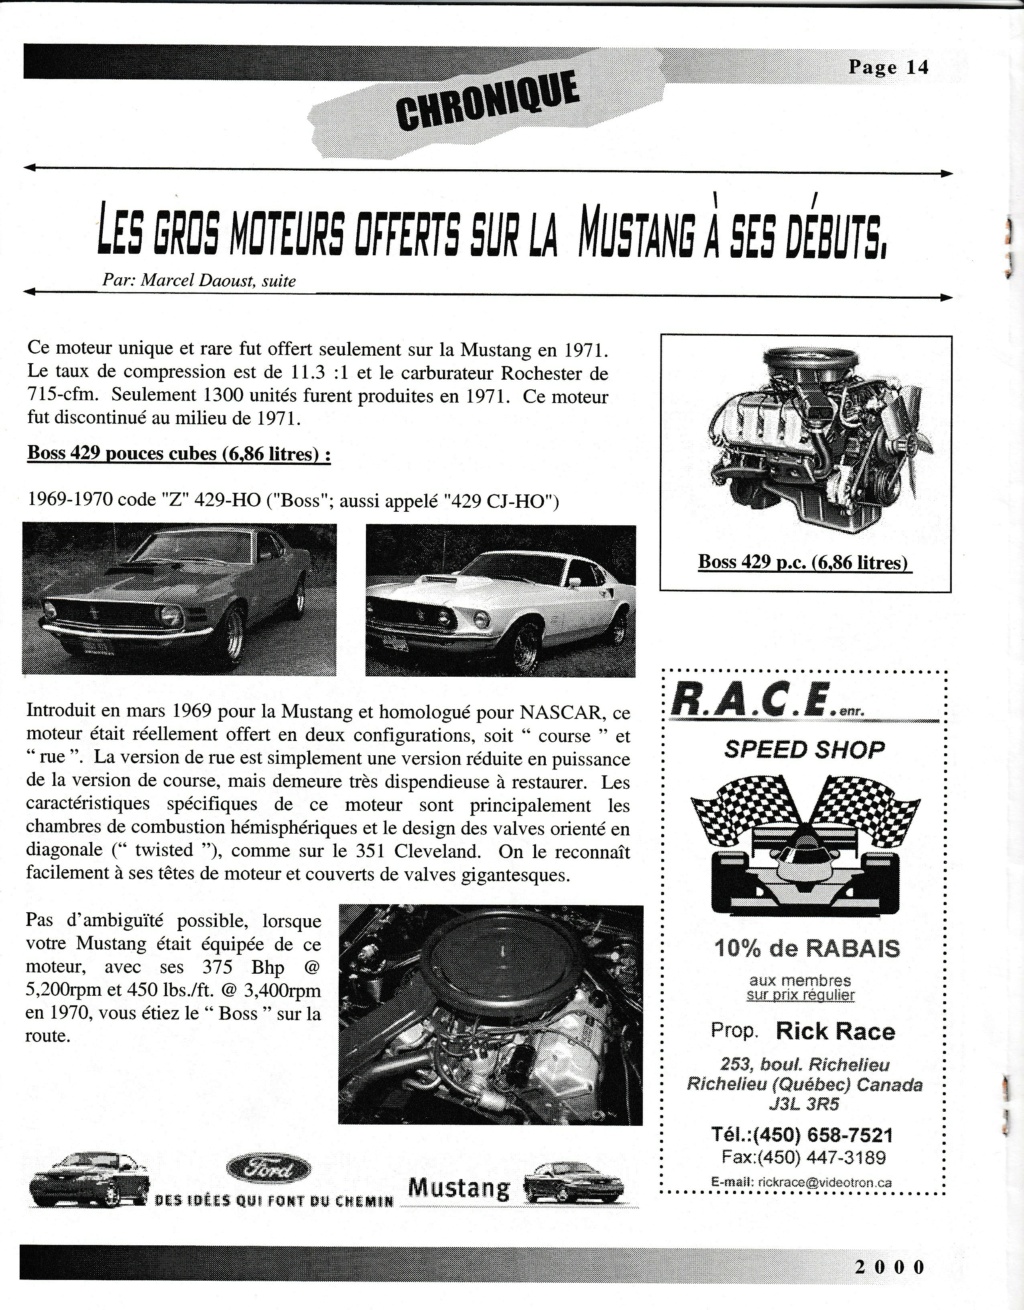 Montréal Mustang dans le temps! 1981 à aujourd'hui (Histoire en photos) - Page 9 Img_2525